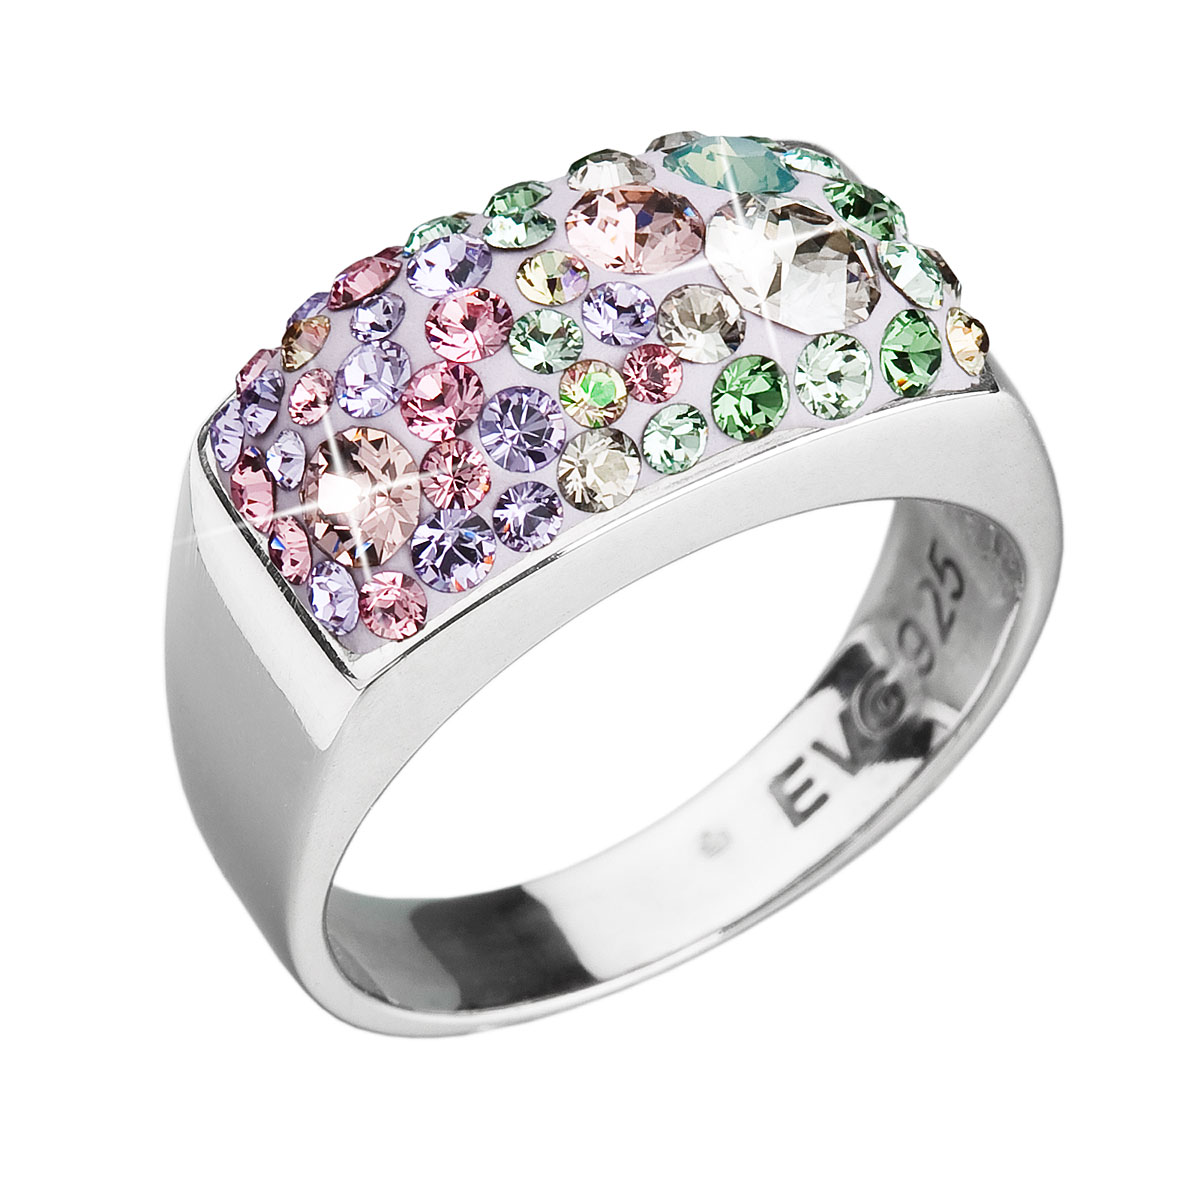 Evolution Group Stříbrný prsten s krystaly Swarovski mix barev fialová zelená růžová 35014.3 sakura